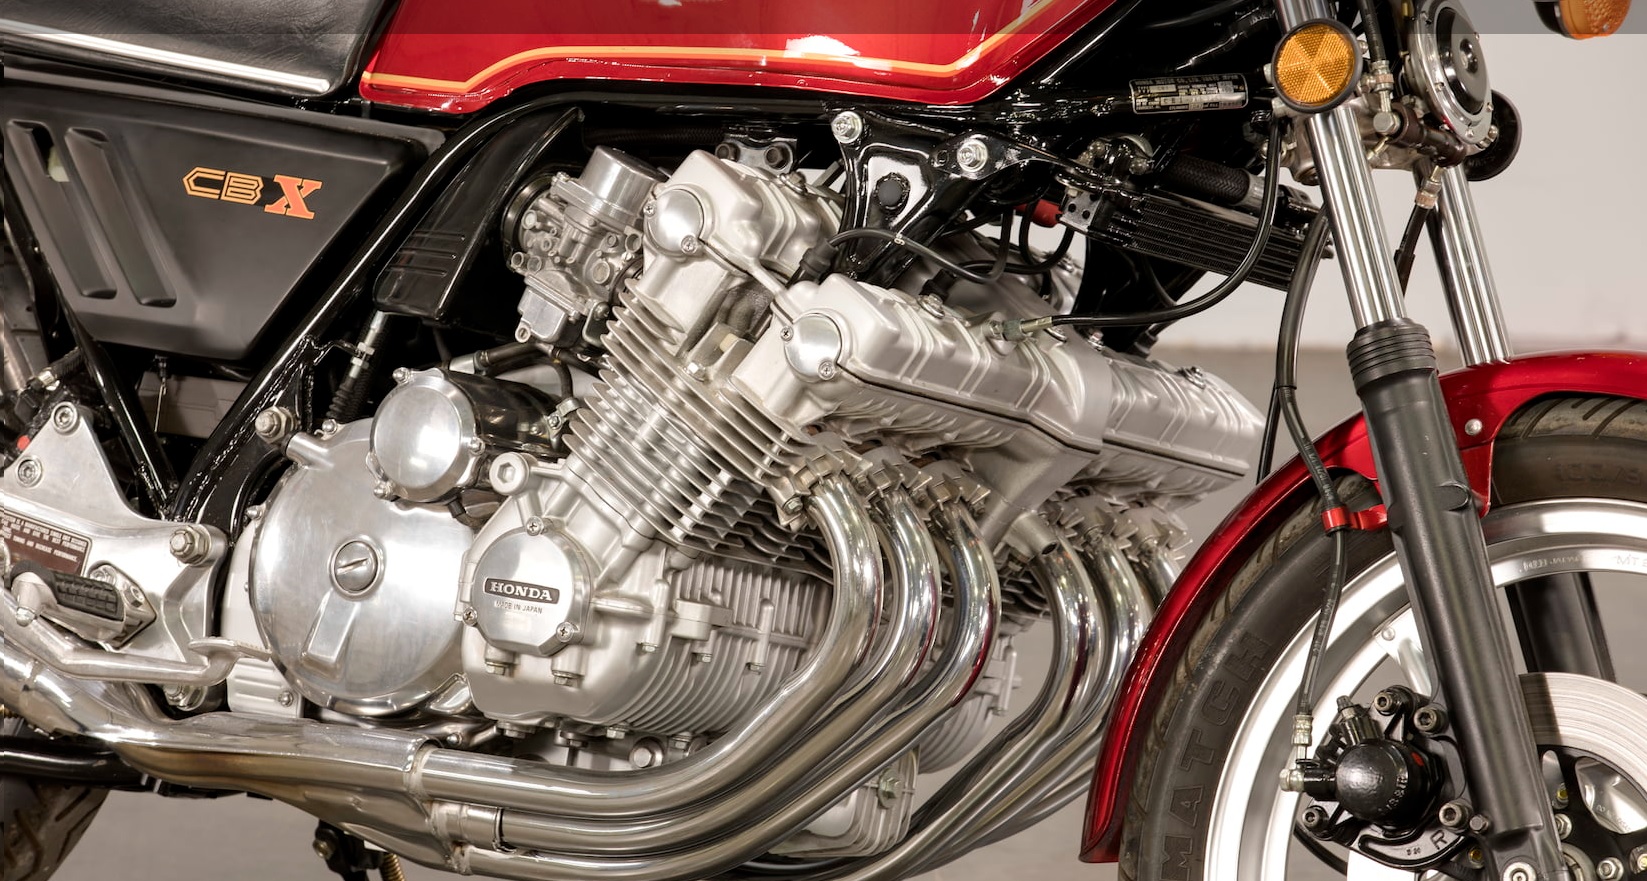 Tudo sobre a Honda CBX 1050: A Lenda que Marcou Época - Retornar -  Transformando Vidas